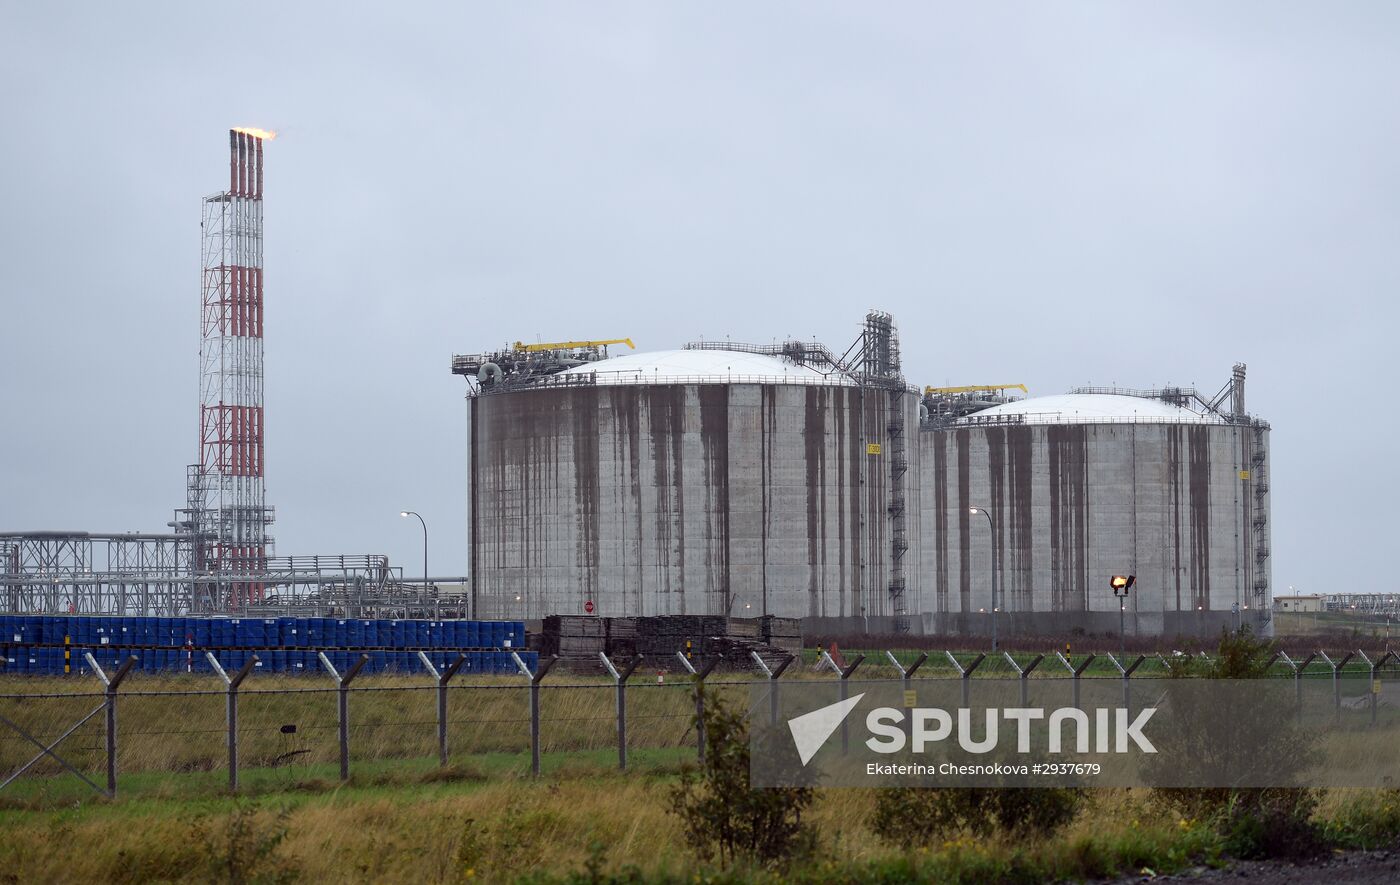 Sakhalin Energy's LNG plant in Yuzhno-Sakhalinsk